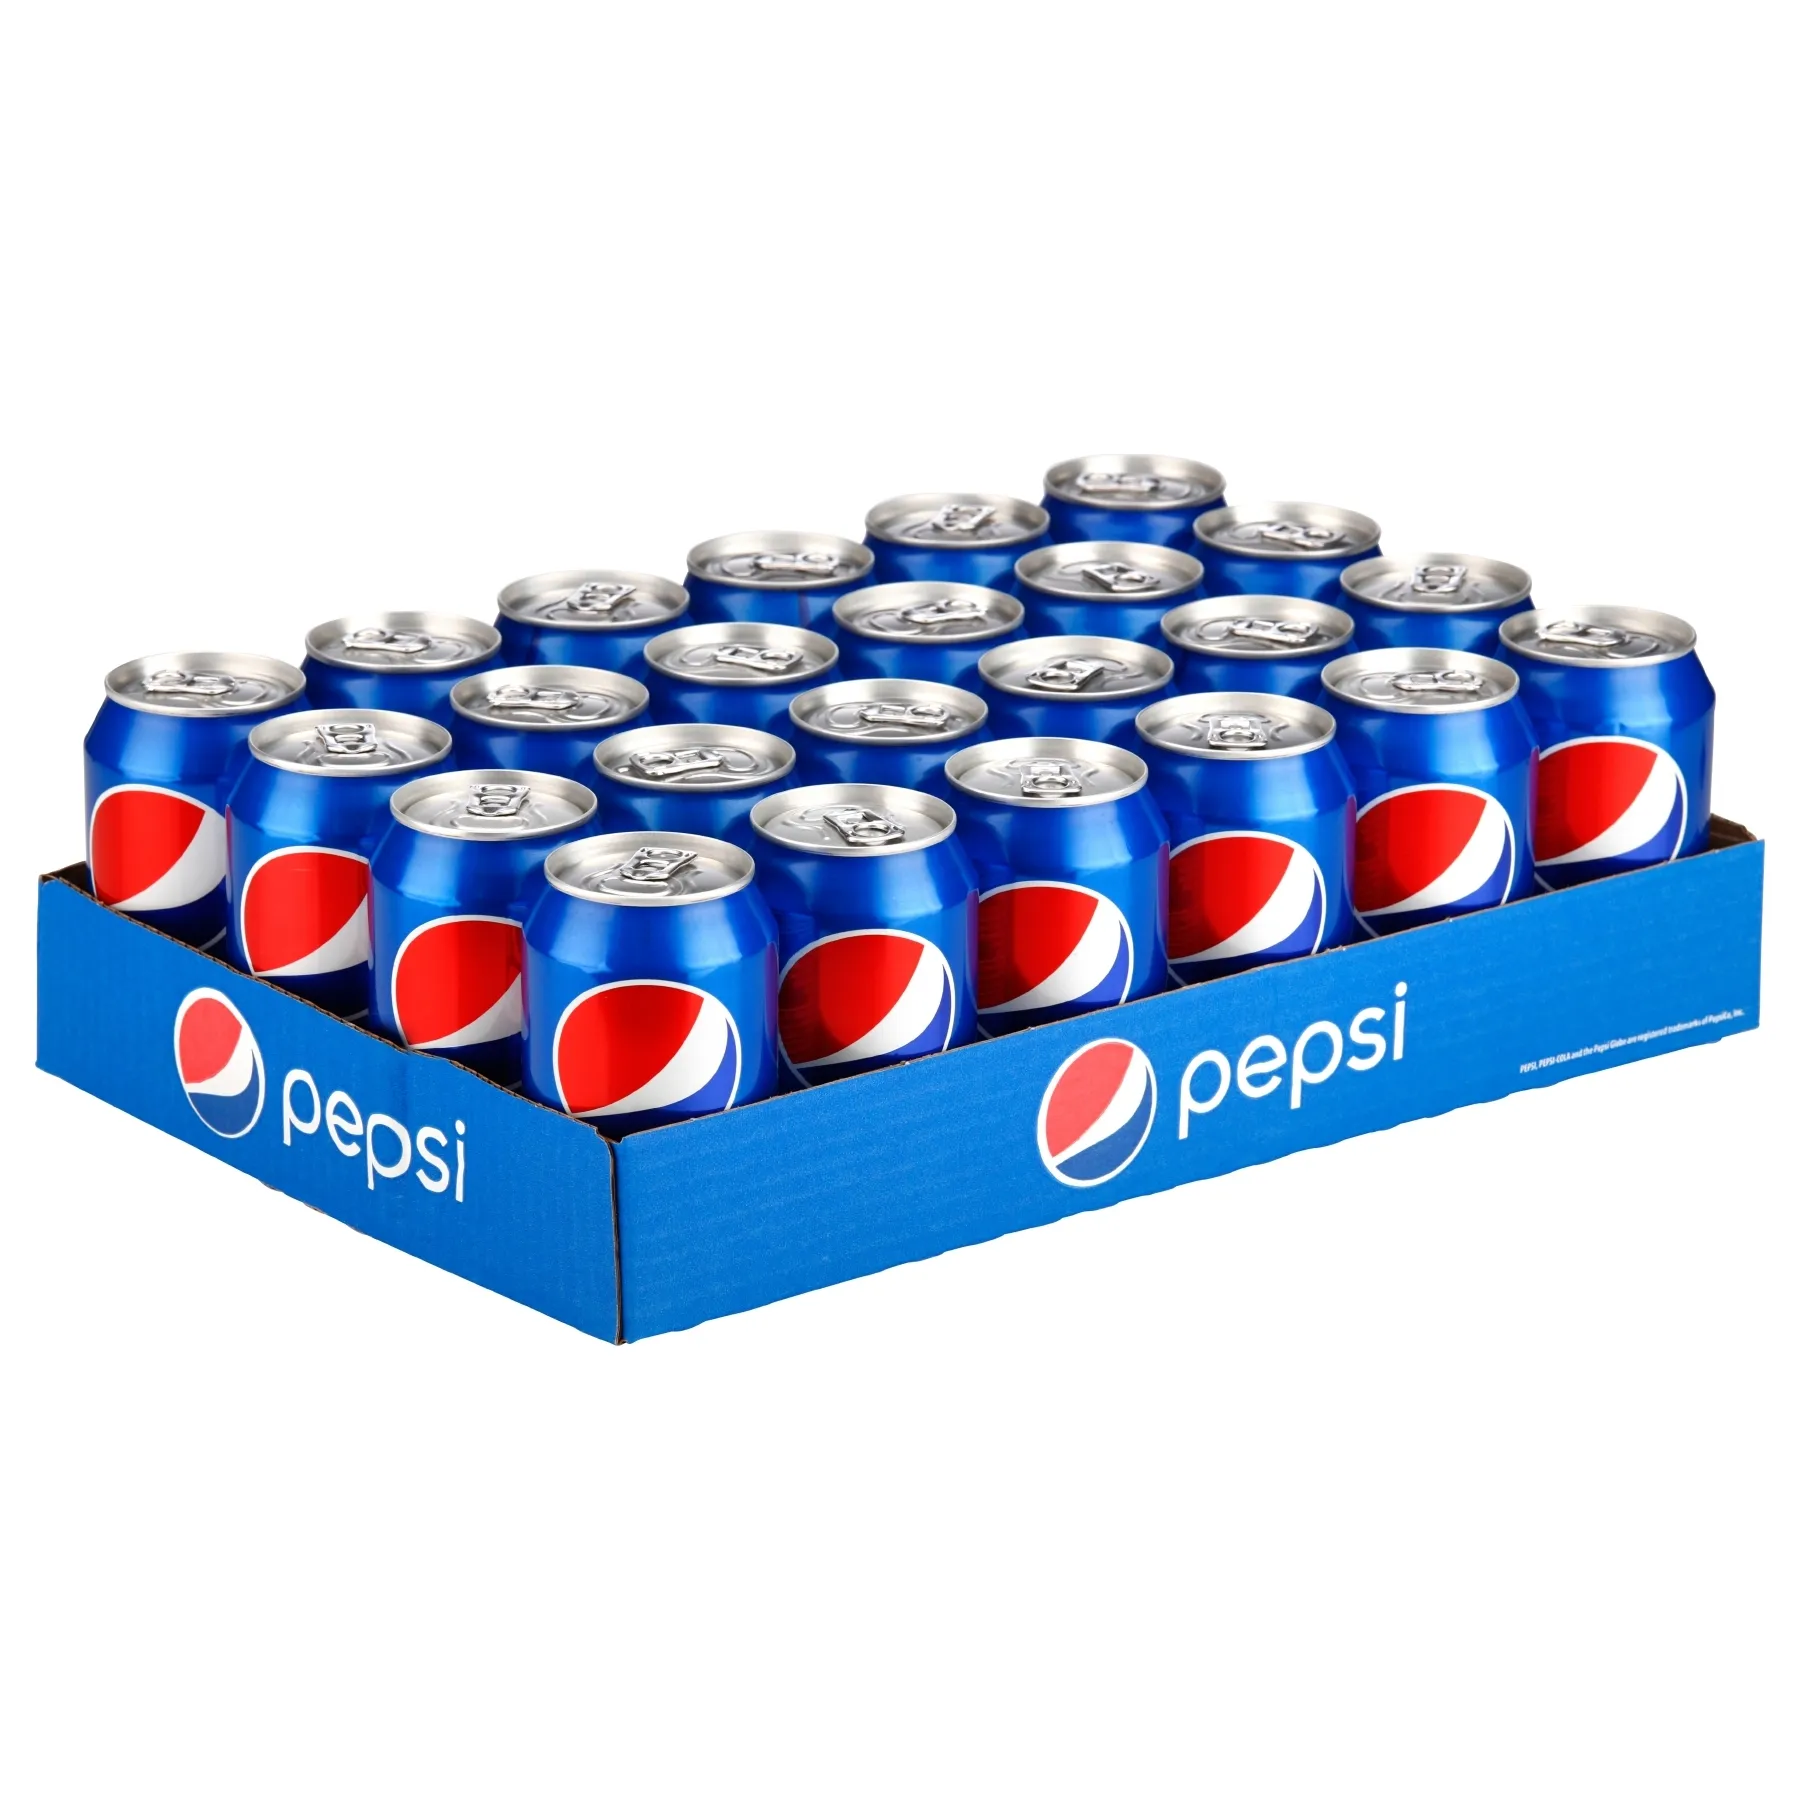 Pepsi bibita Pepsi 330ml * 24 lattine/Pepsi Cola 0.33l può